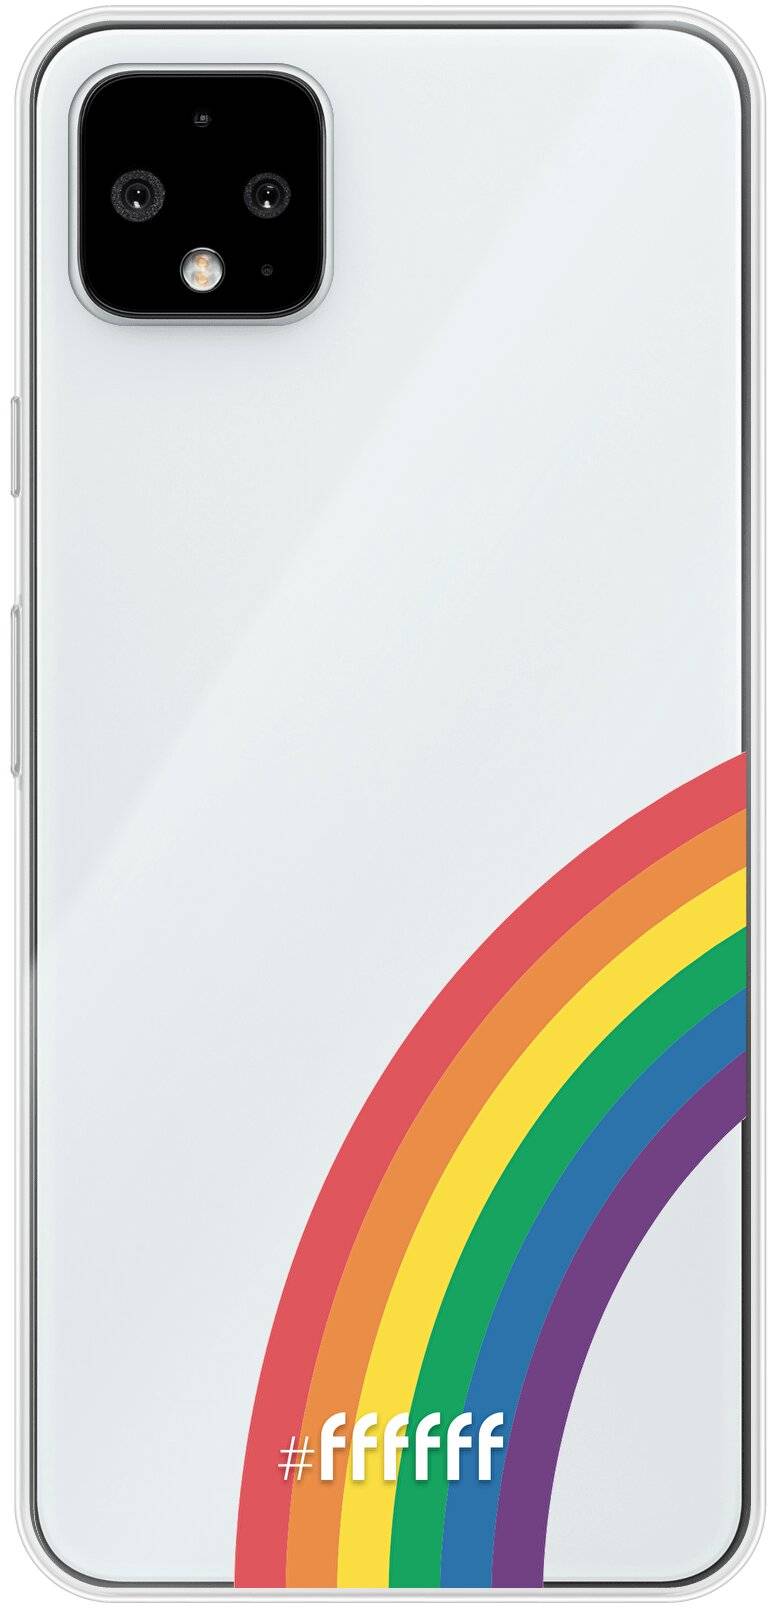 #LGBT - Rainbow Pixel 4 XL